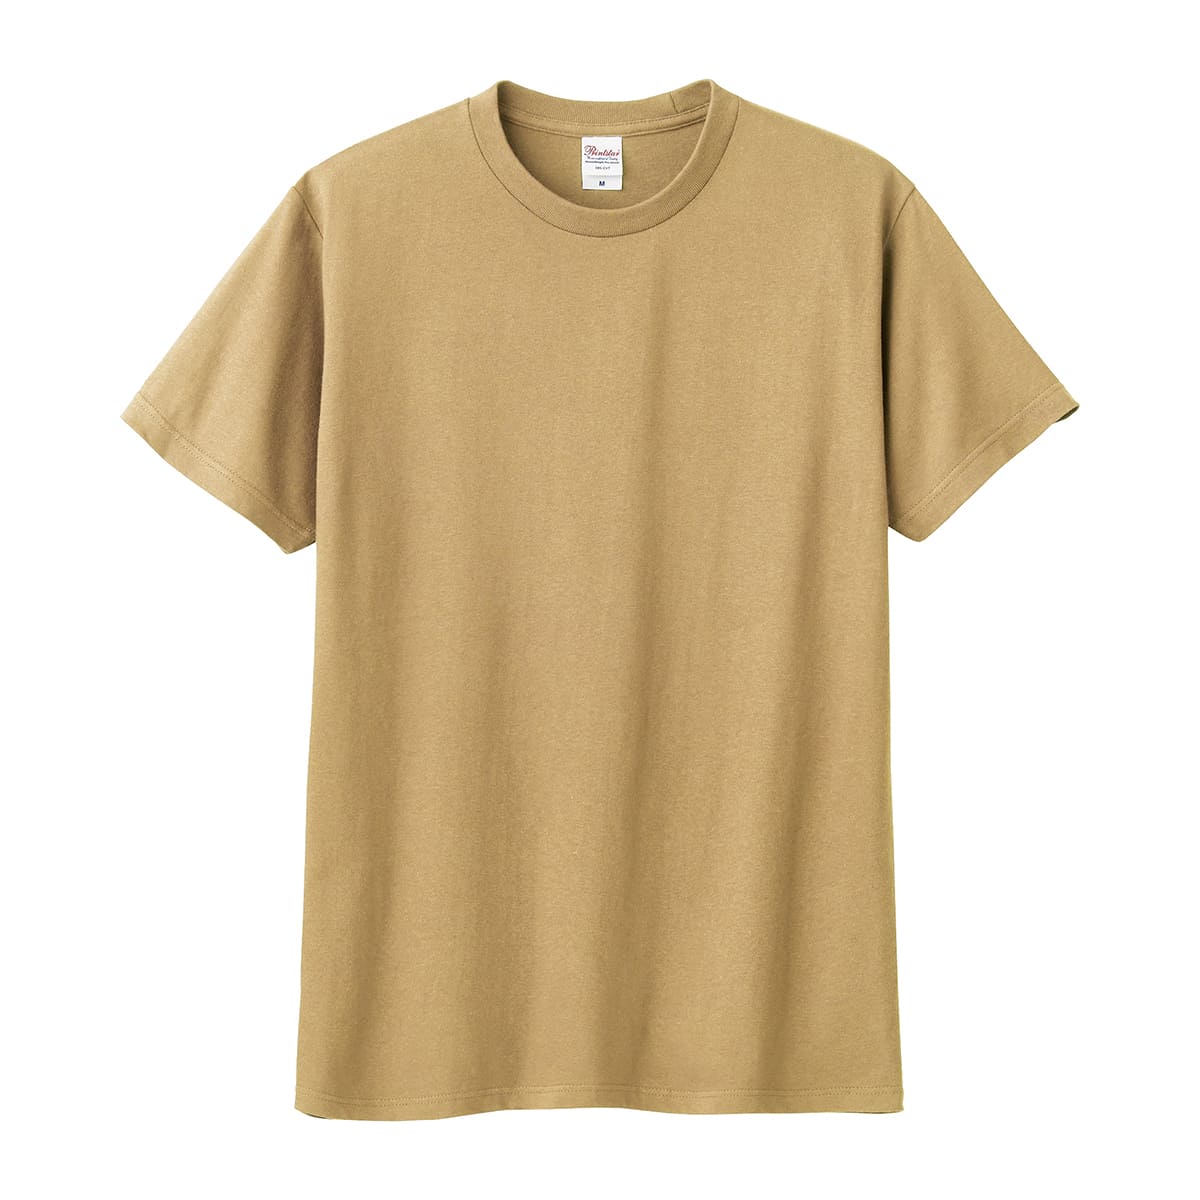 tシャツ Printstar 5.6オンス ヘビーウェイト リミテッドカラーTシャツ 00095-c...